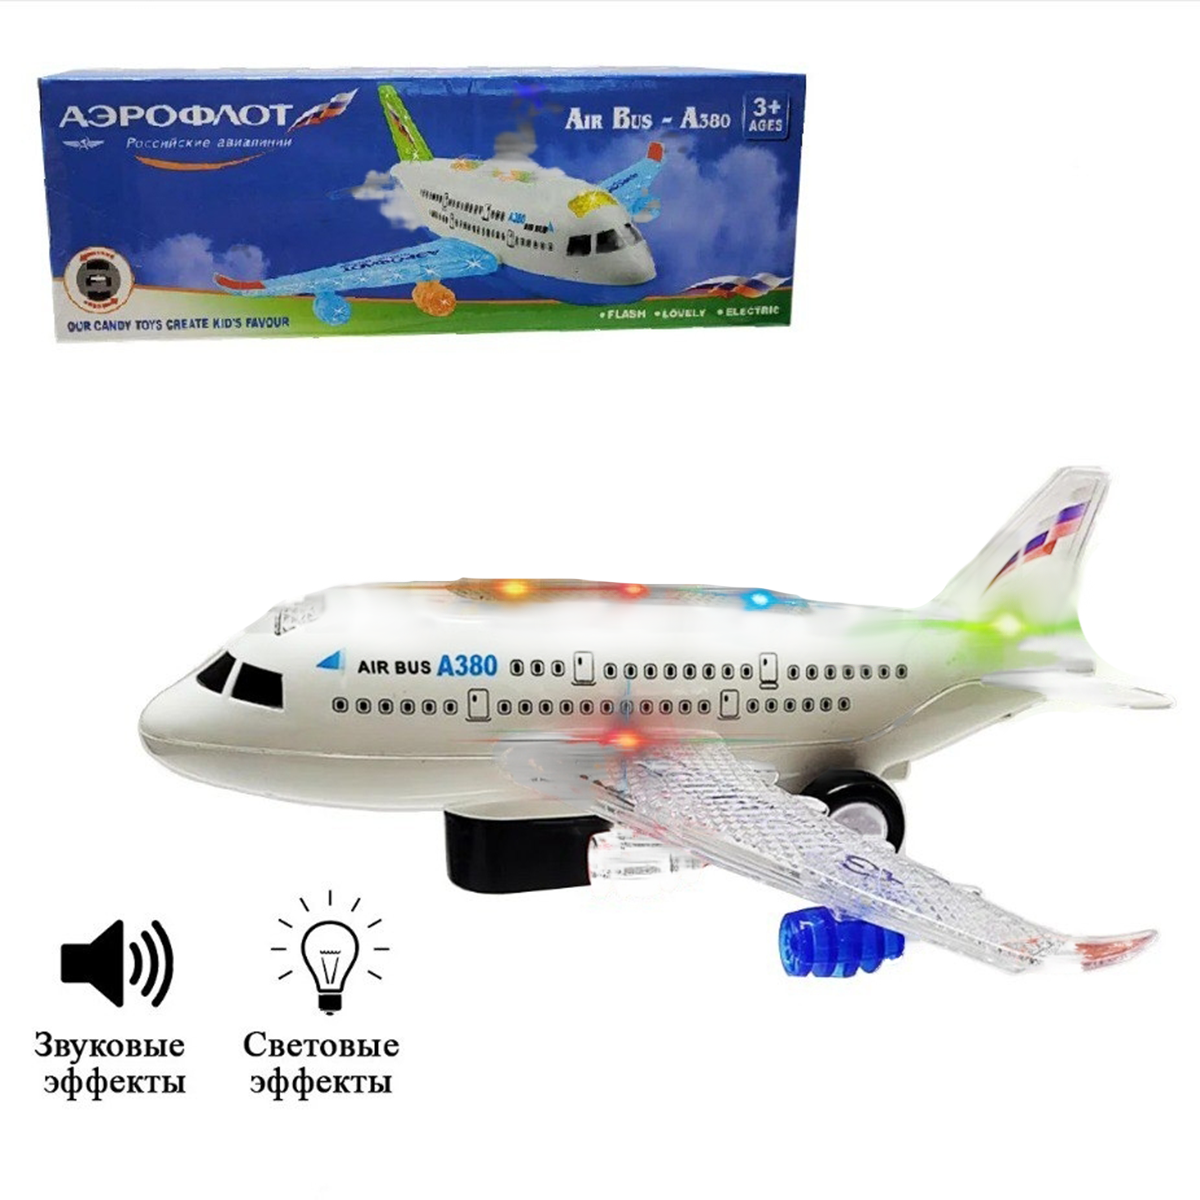 Детский игрушечный самолет Аэрофлот аэробус A380 23*6*8см